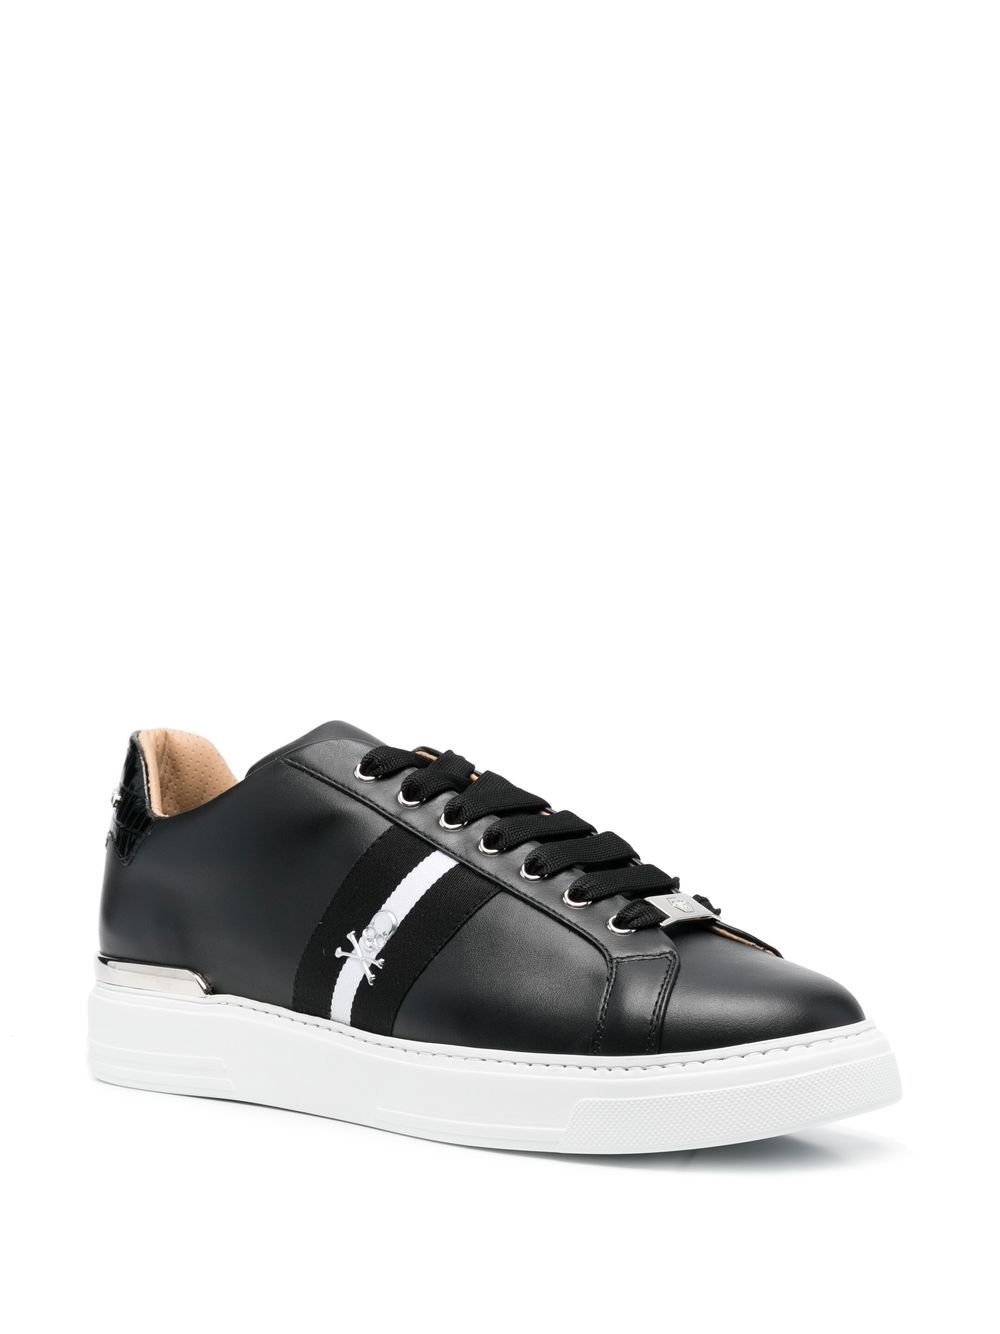 Philipp Plein Leather low-top Stripe Sneakers - Farfetch